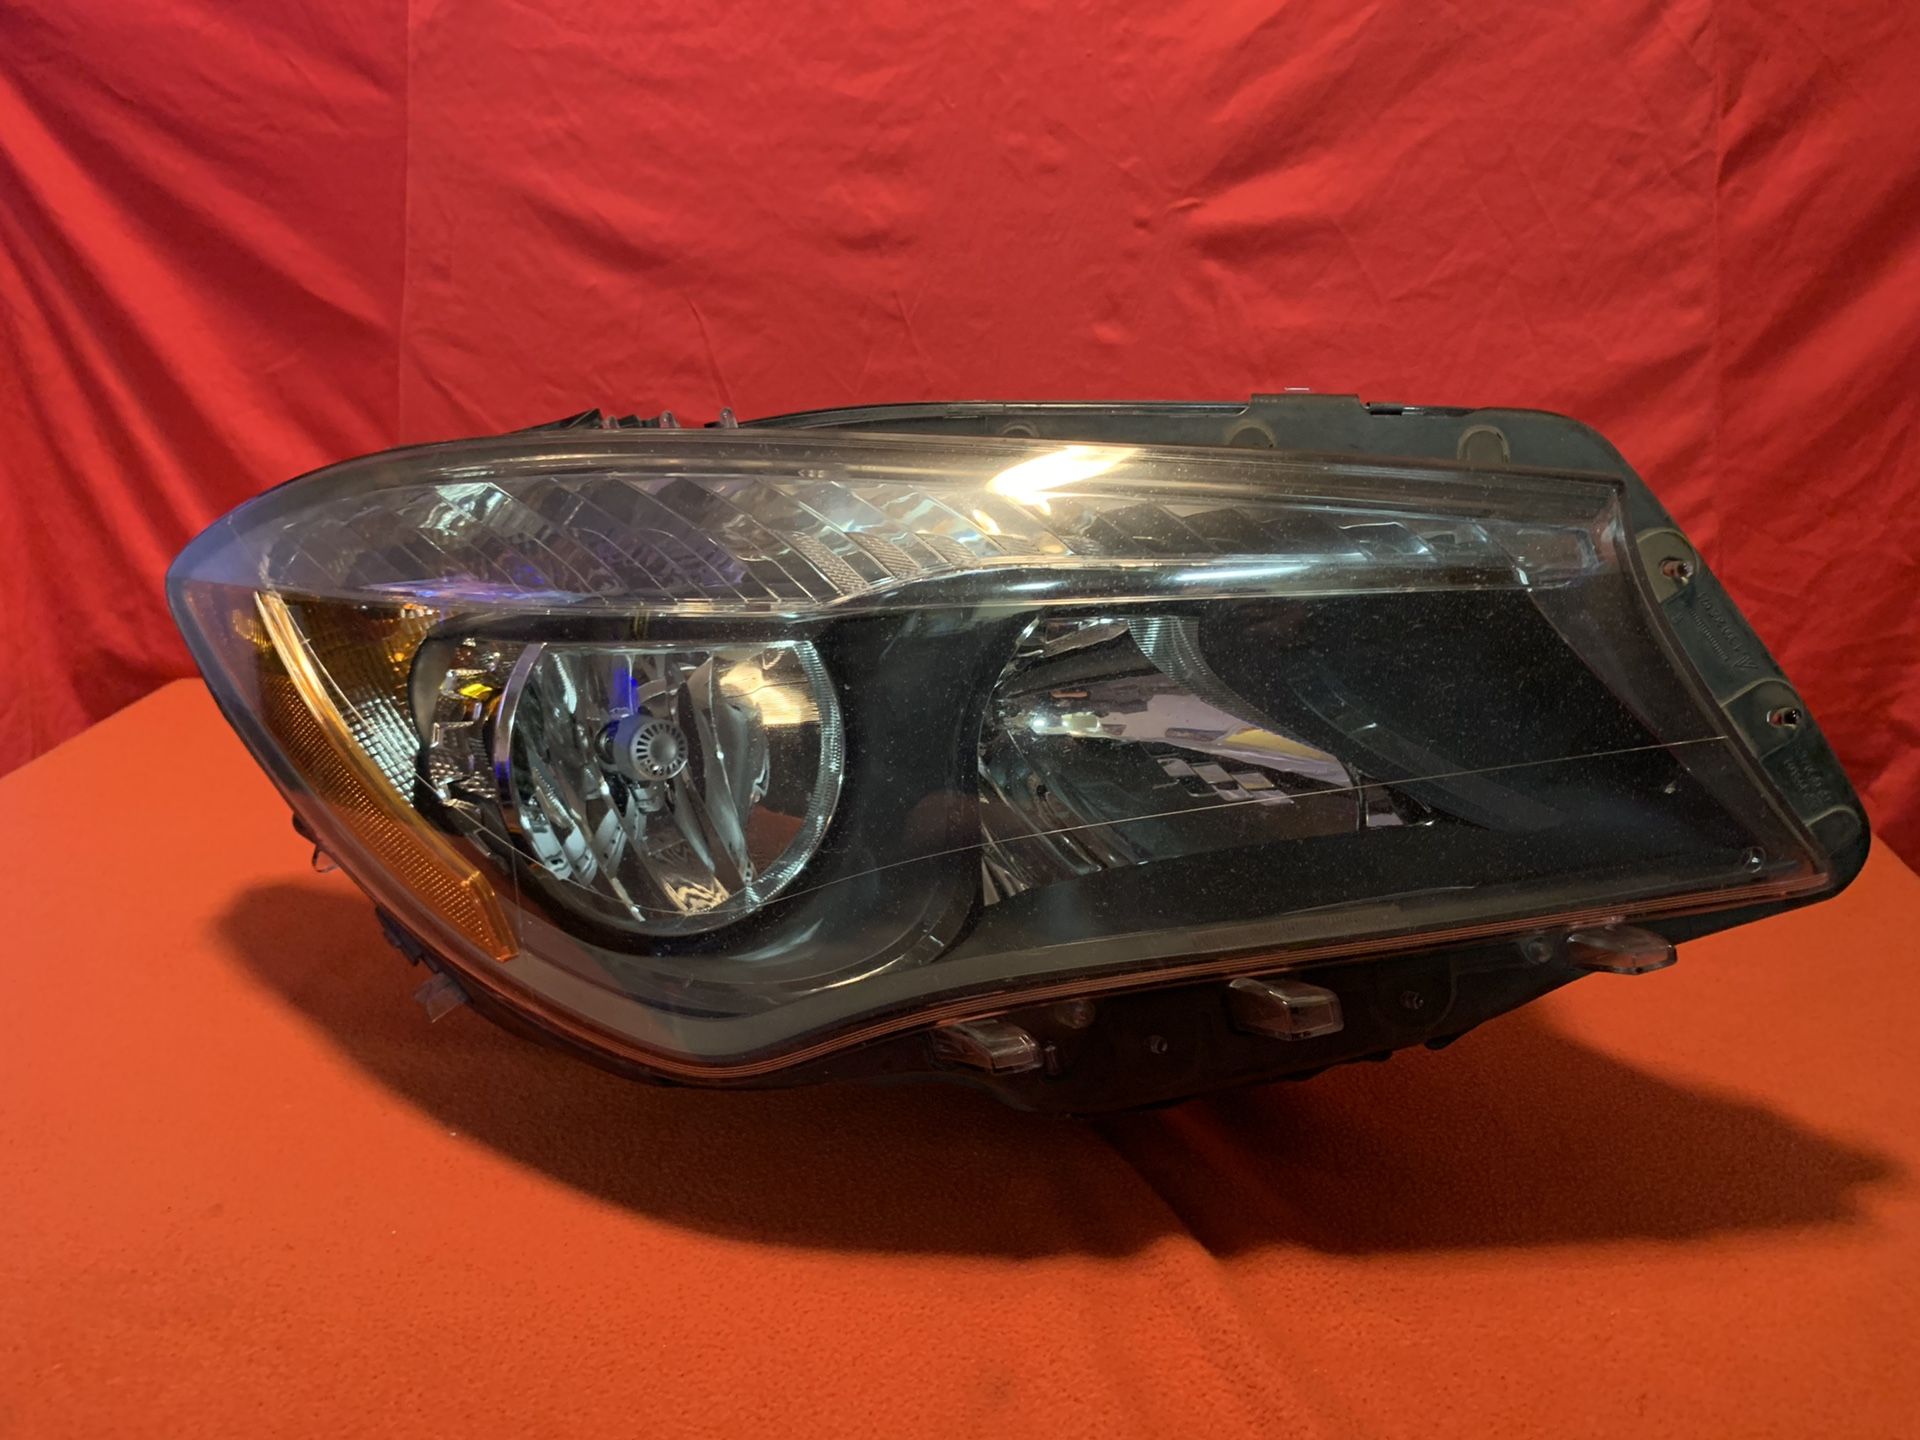 Mercedes Benz CLA headlight